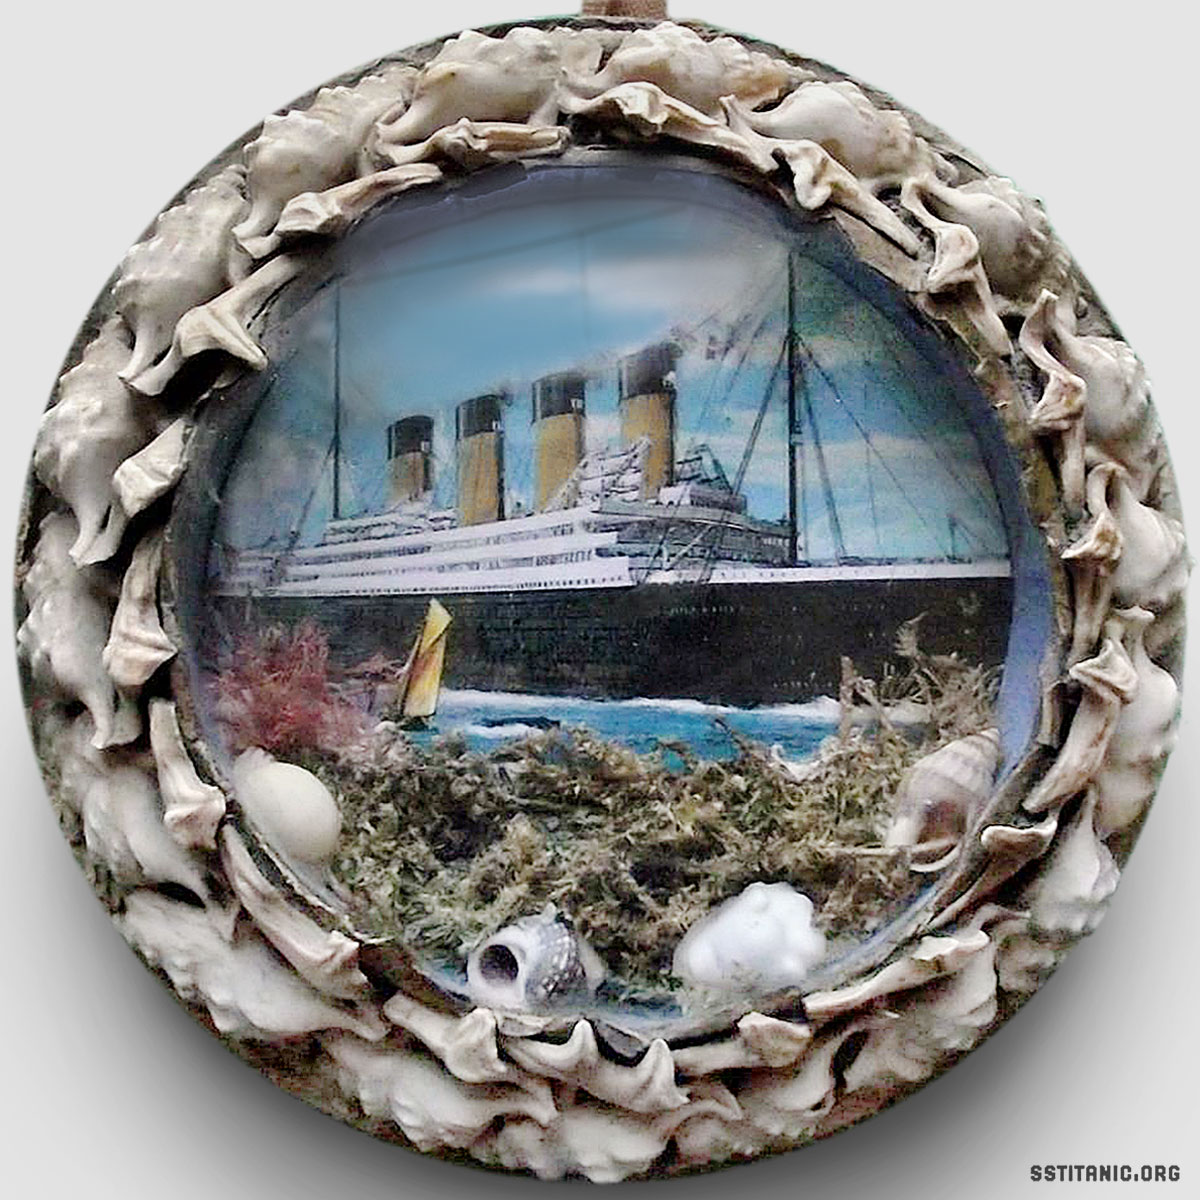 hmhs rms britannic shellwork shells glass dome sailors valentine souvenir titanic 1912